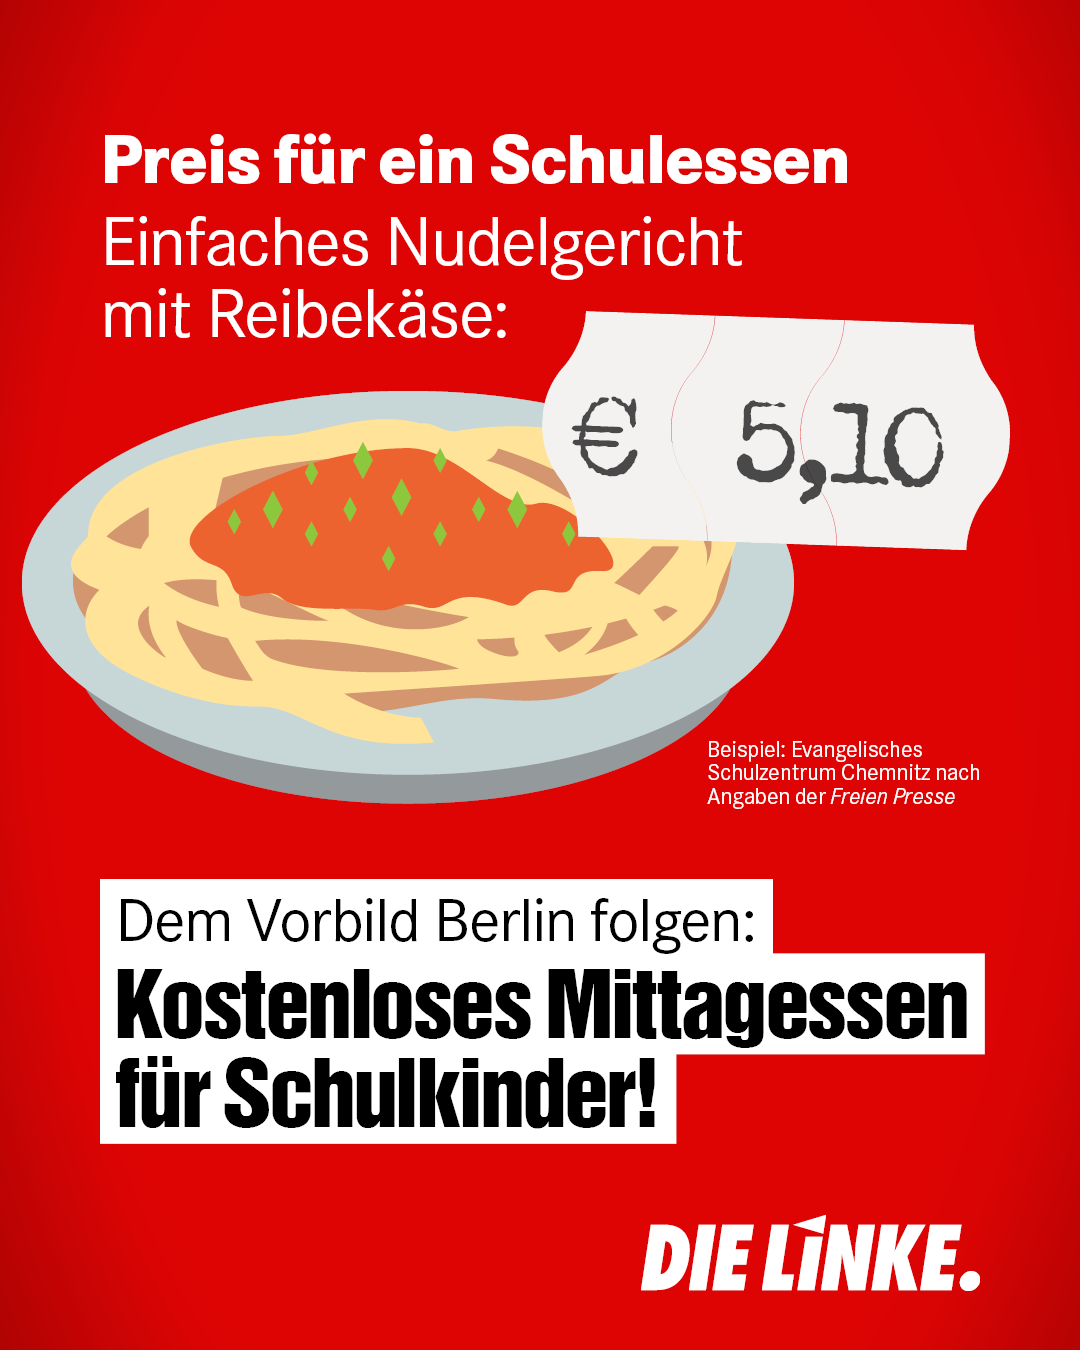 Ein Bild von einem Teller Nudeln, darauf der Text: "Preis für ein Schulessen. Einfaches Nudelgericht mit Reibekäse: 5,10 €." Darunter als Headline: "Dem Vorbild Berlins folgen: Kostenloses Mittagessen für Schulkinder!".